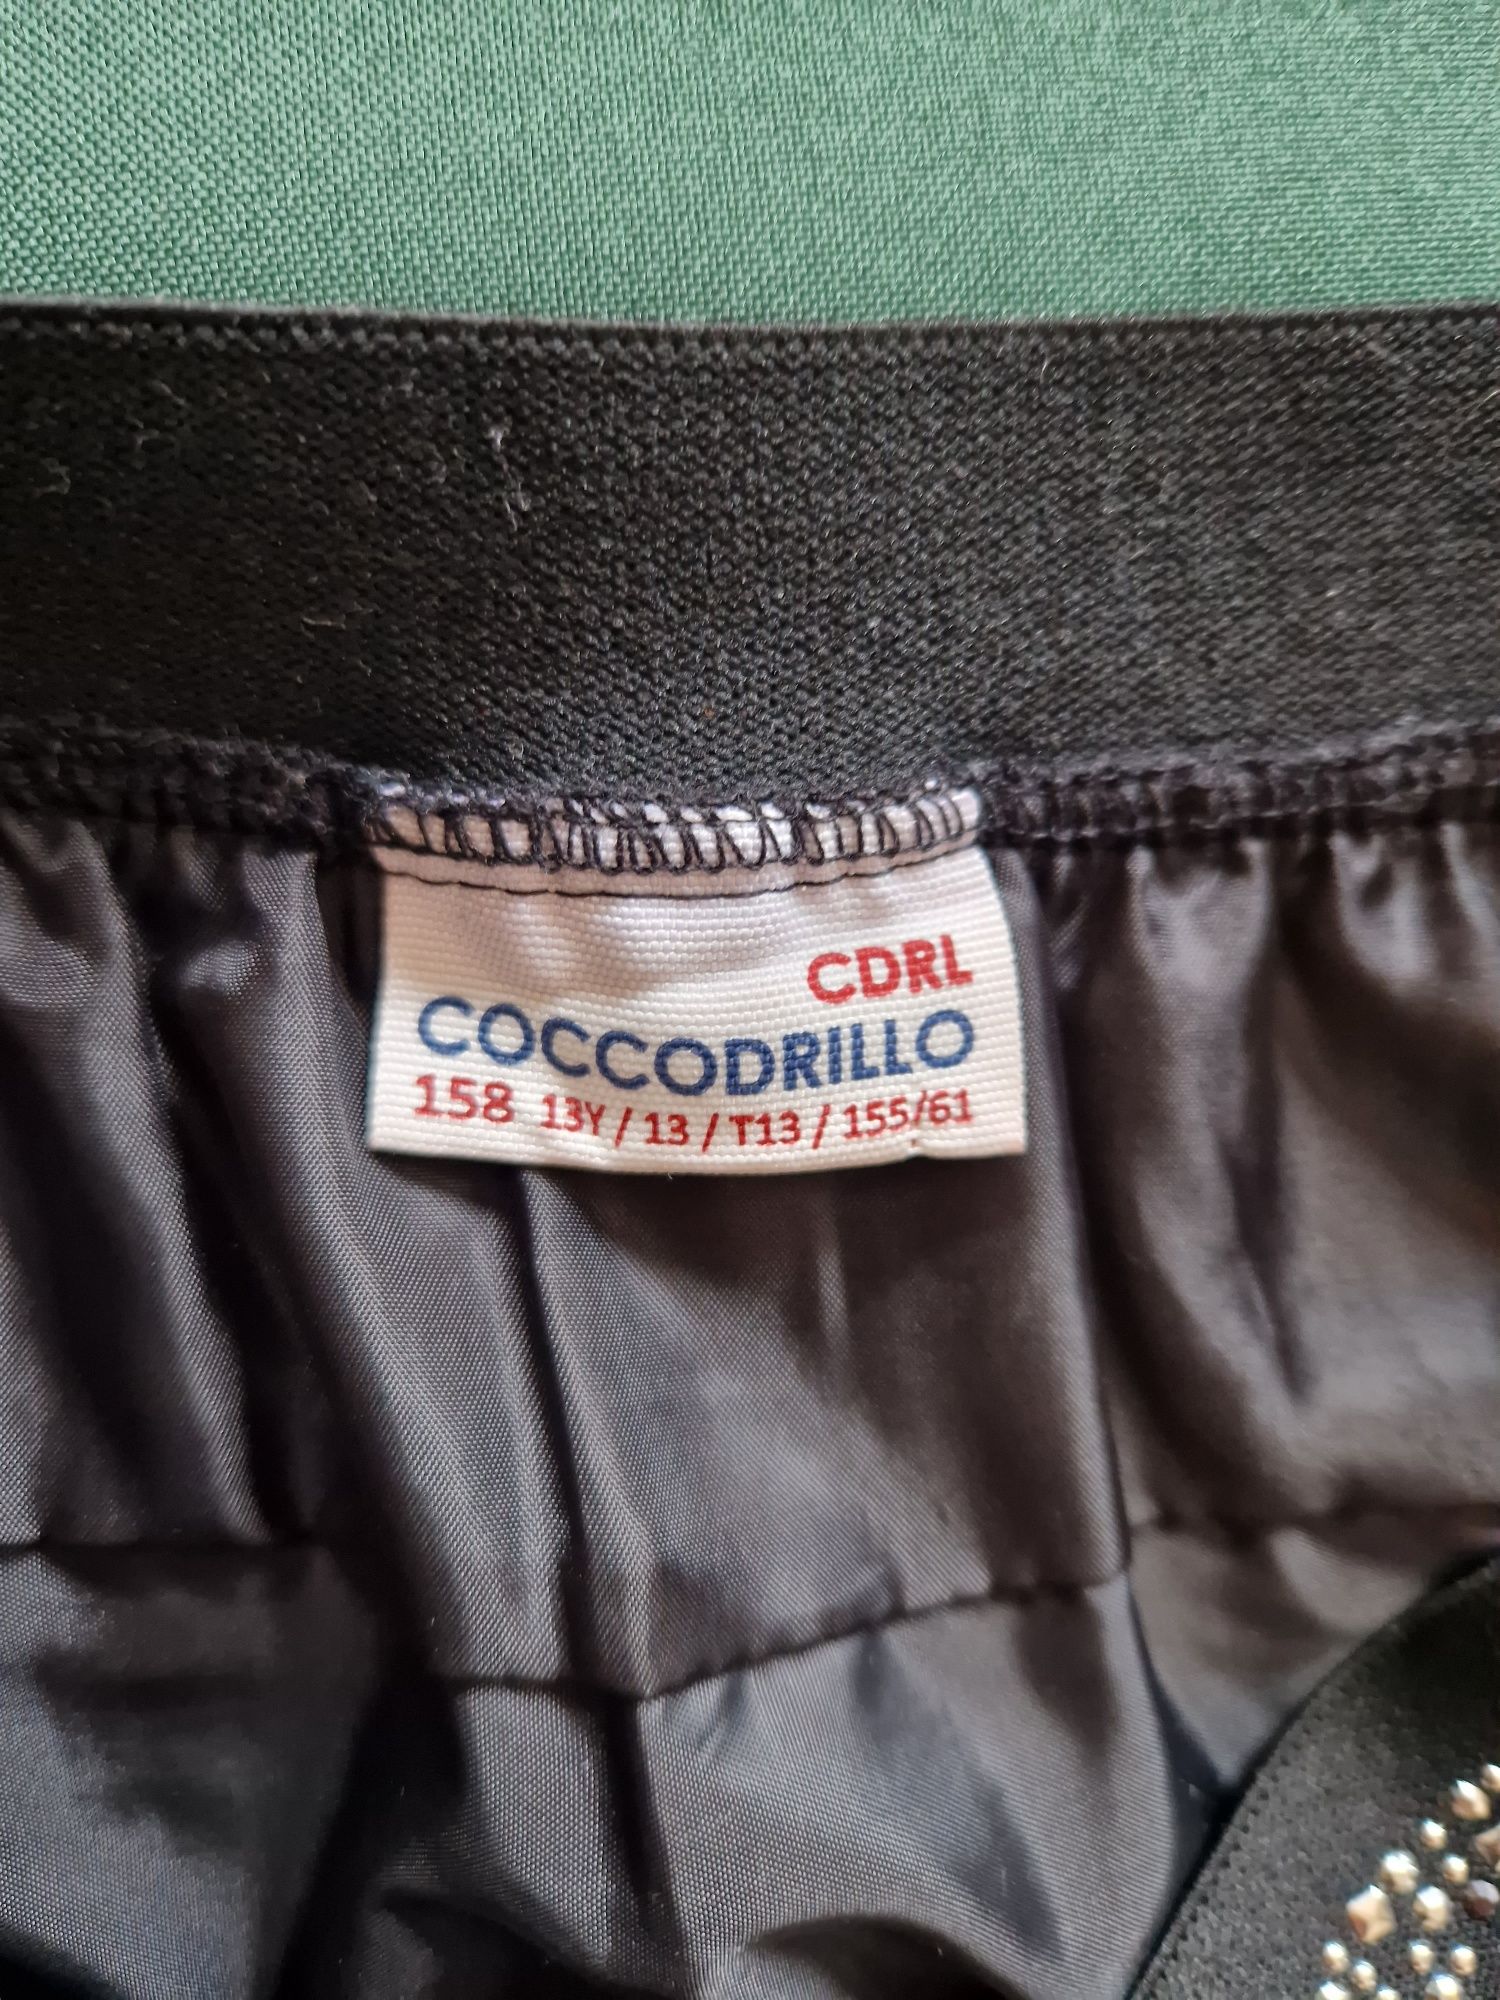 Spódnica firmy Coccodrilo 158 cm